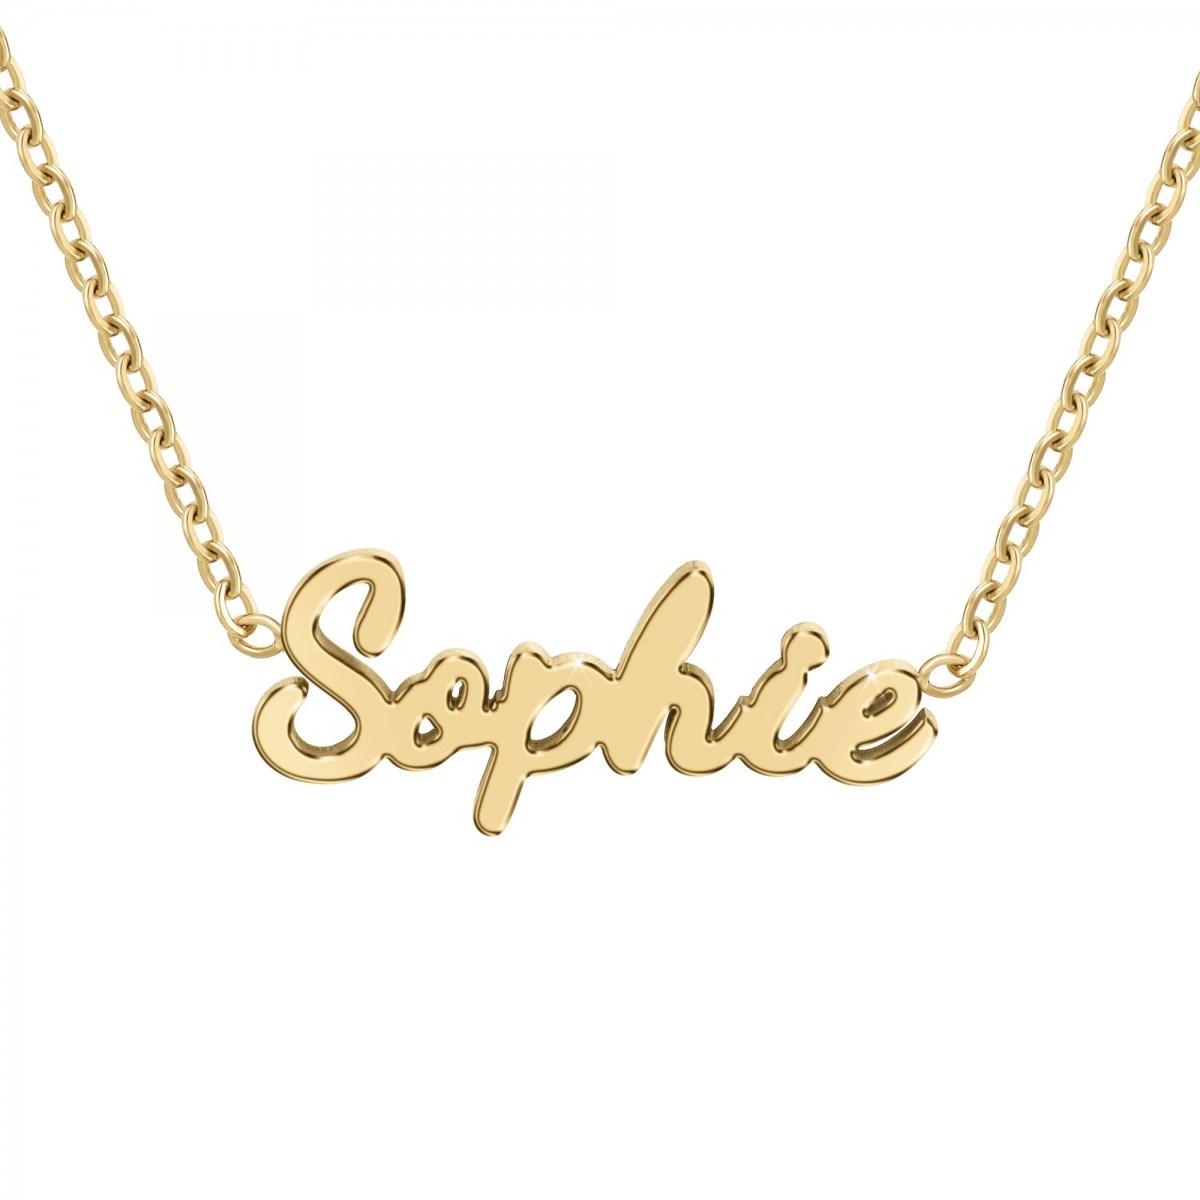 Sophie - Collier prénom